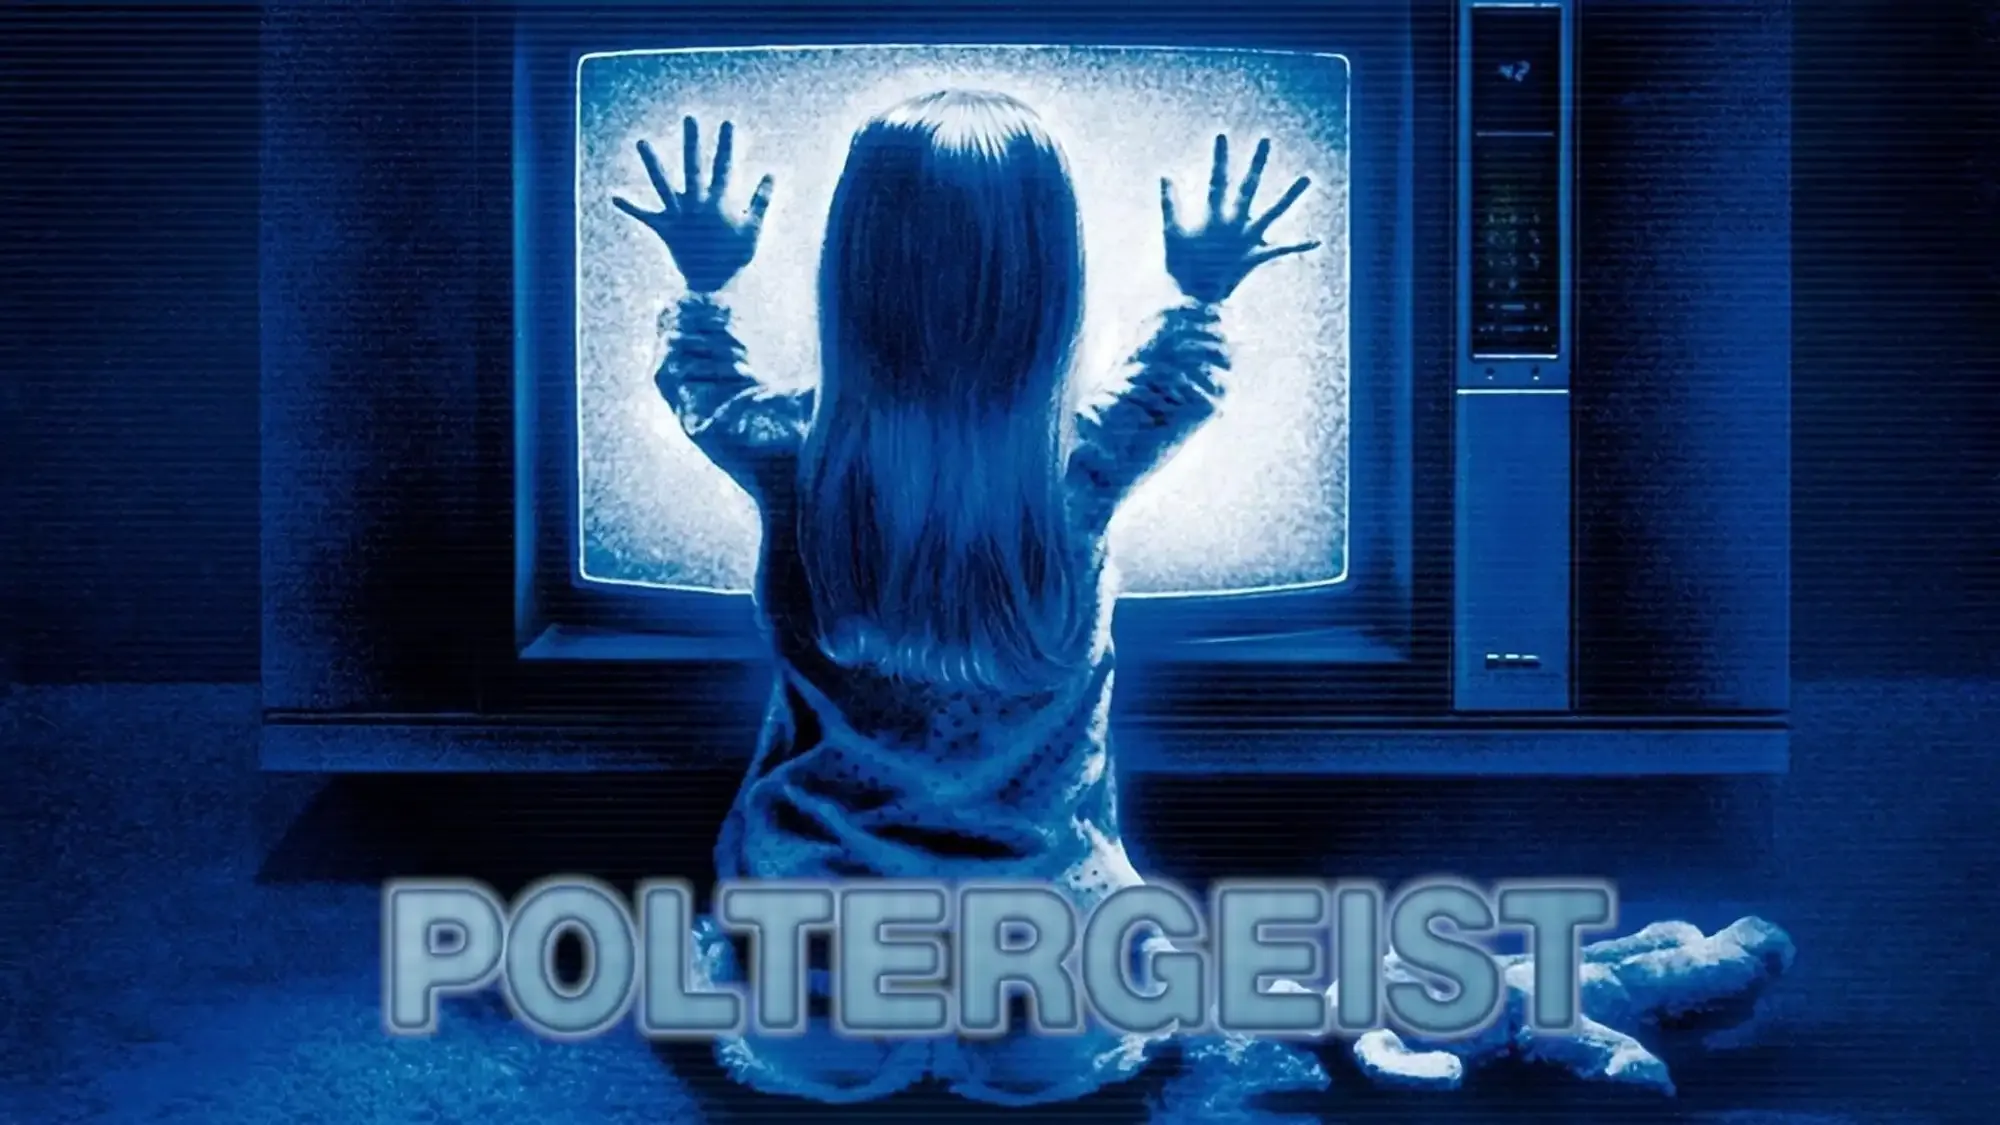 Poltergeist movie review